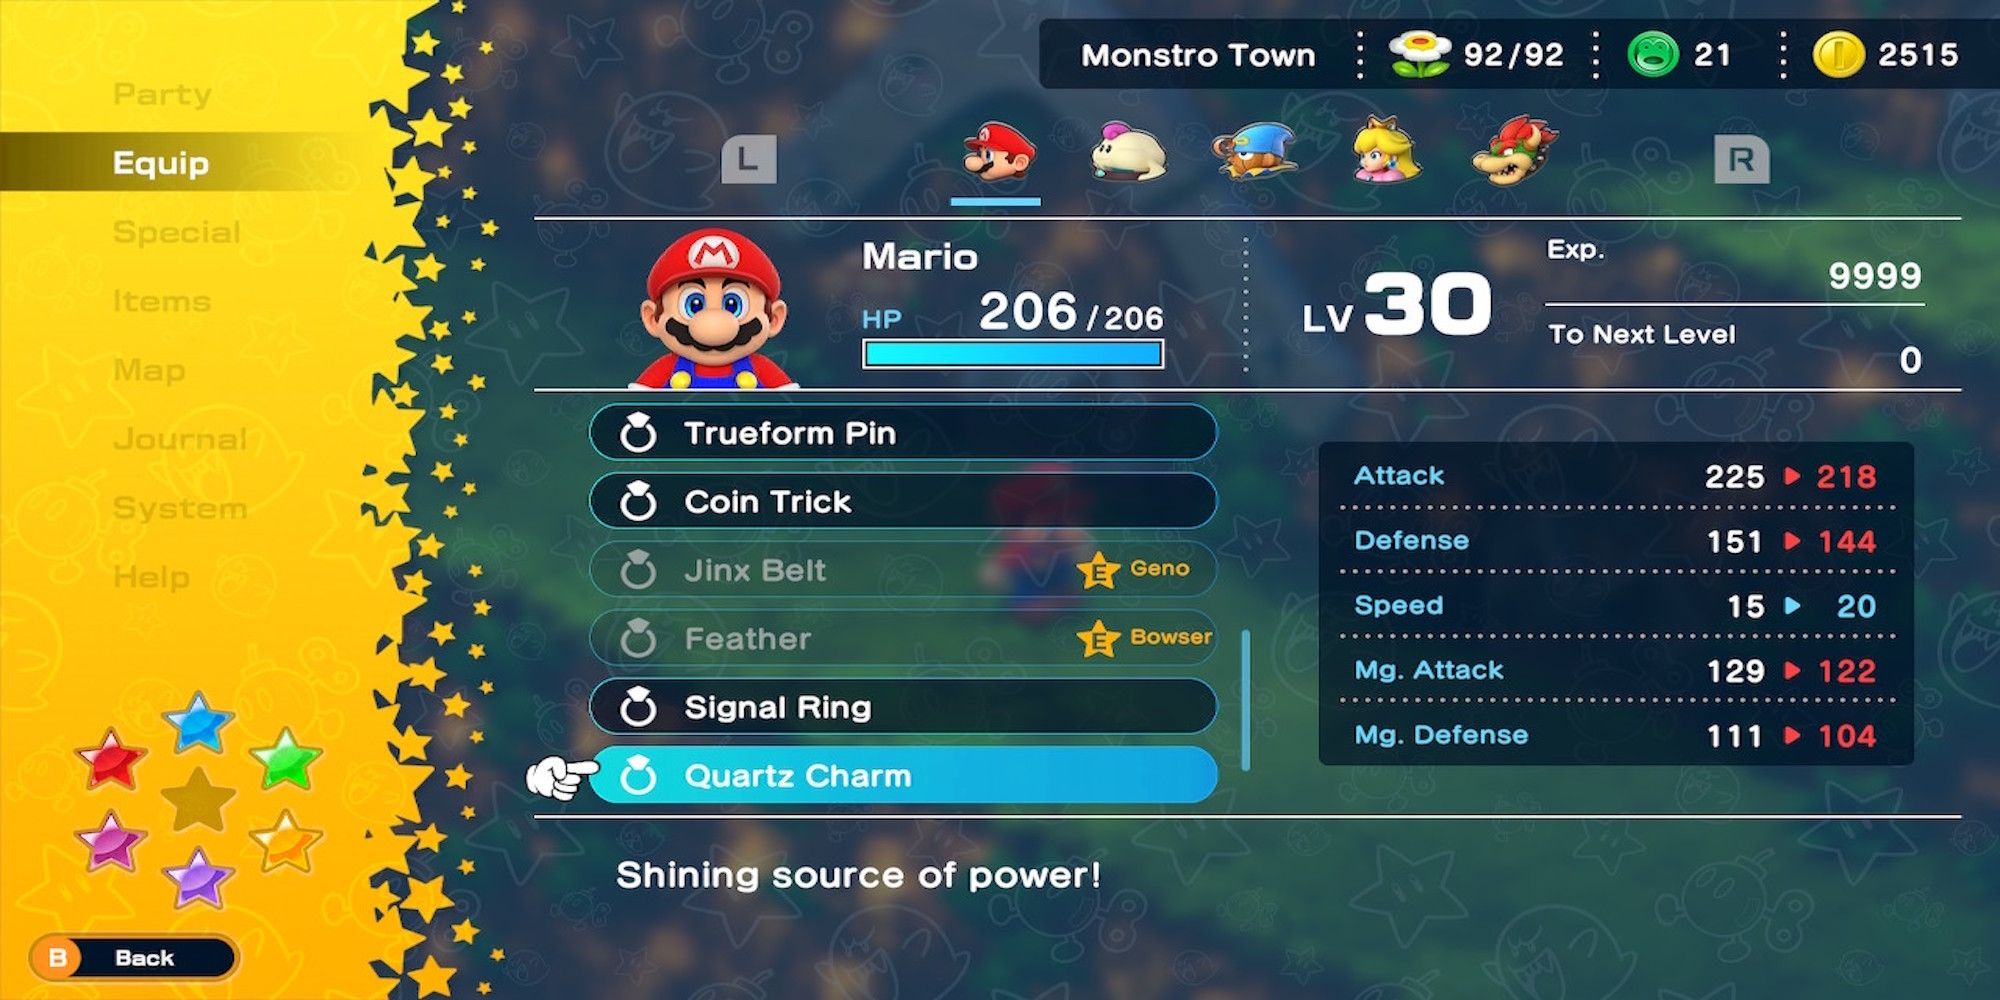 Quartz Charm accessory in Super Mario RPG